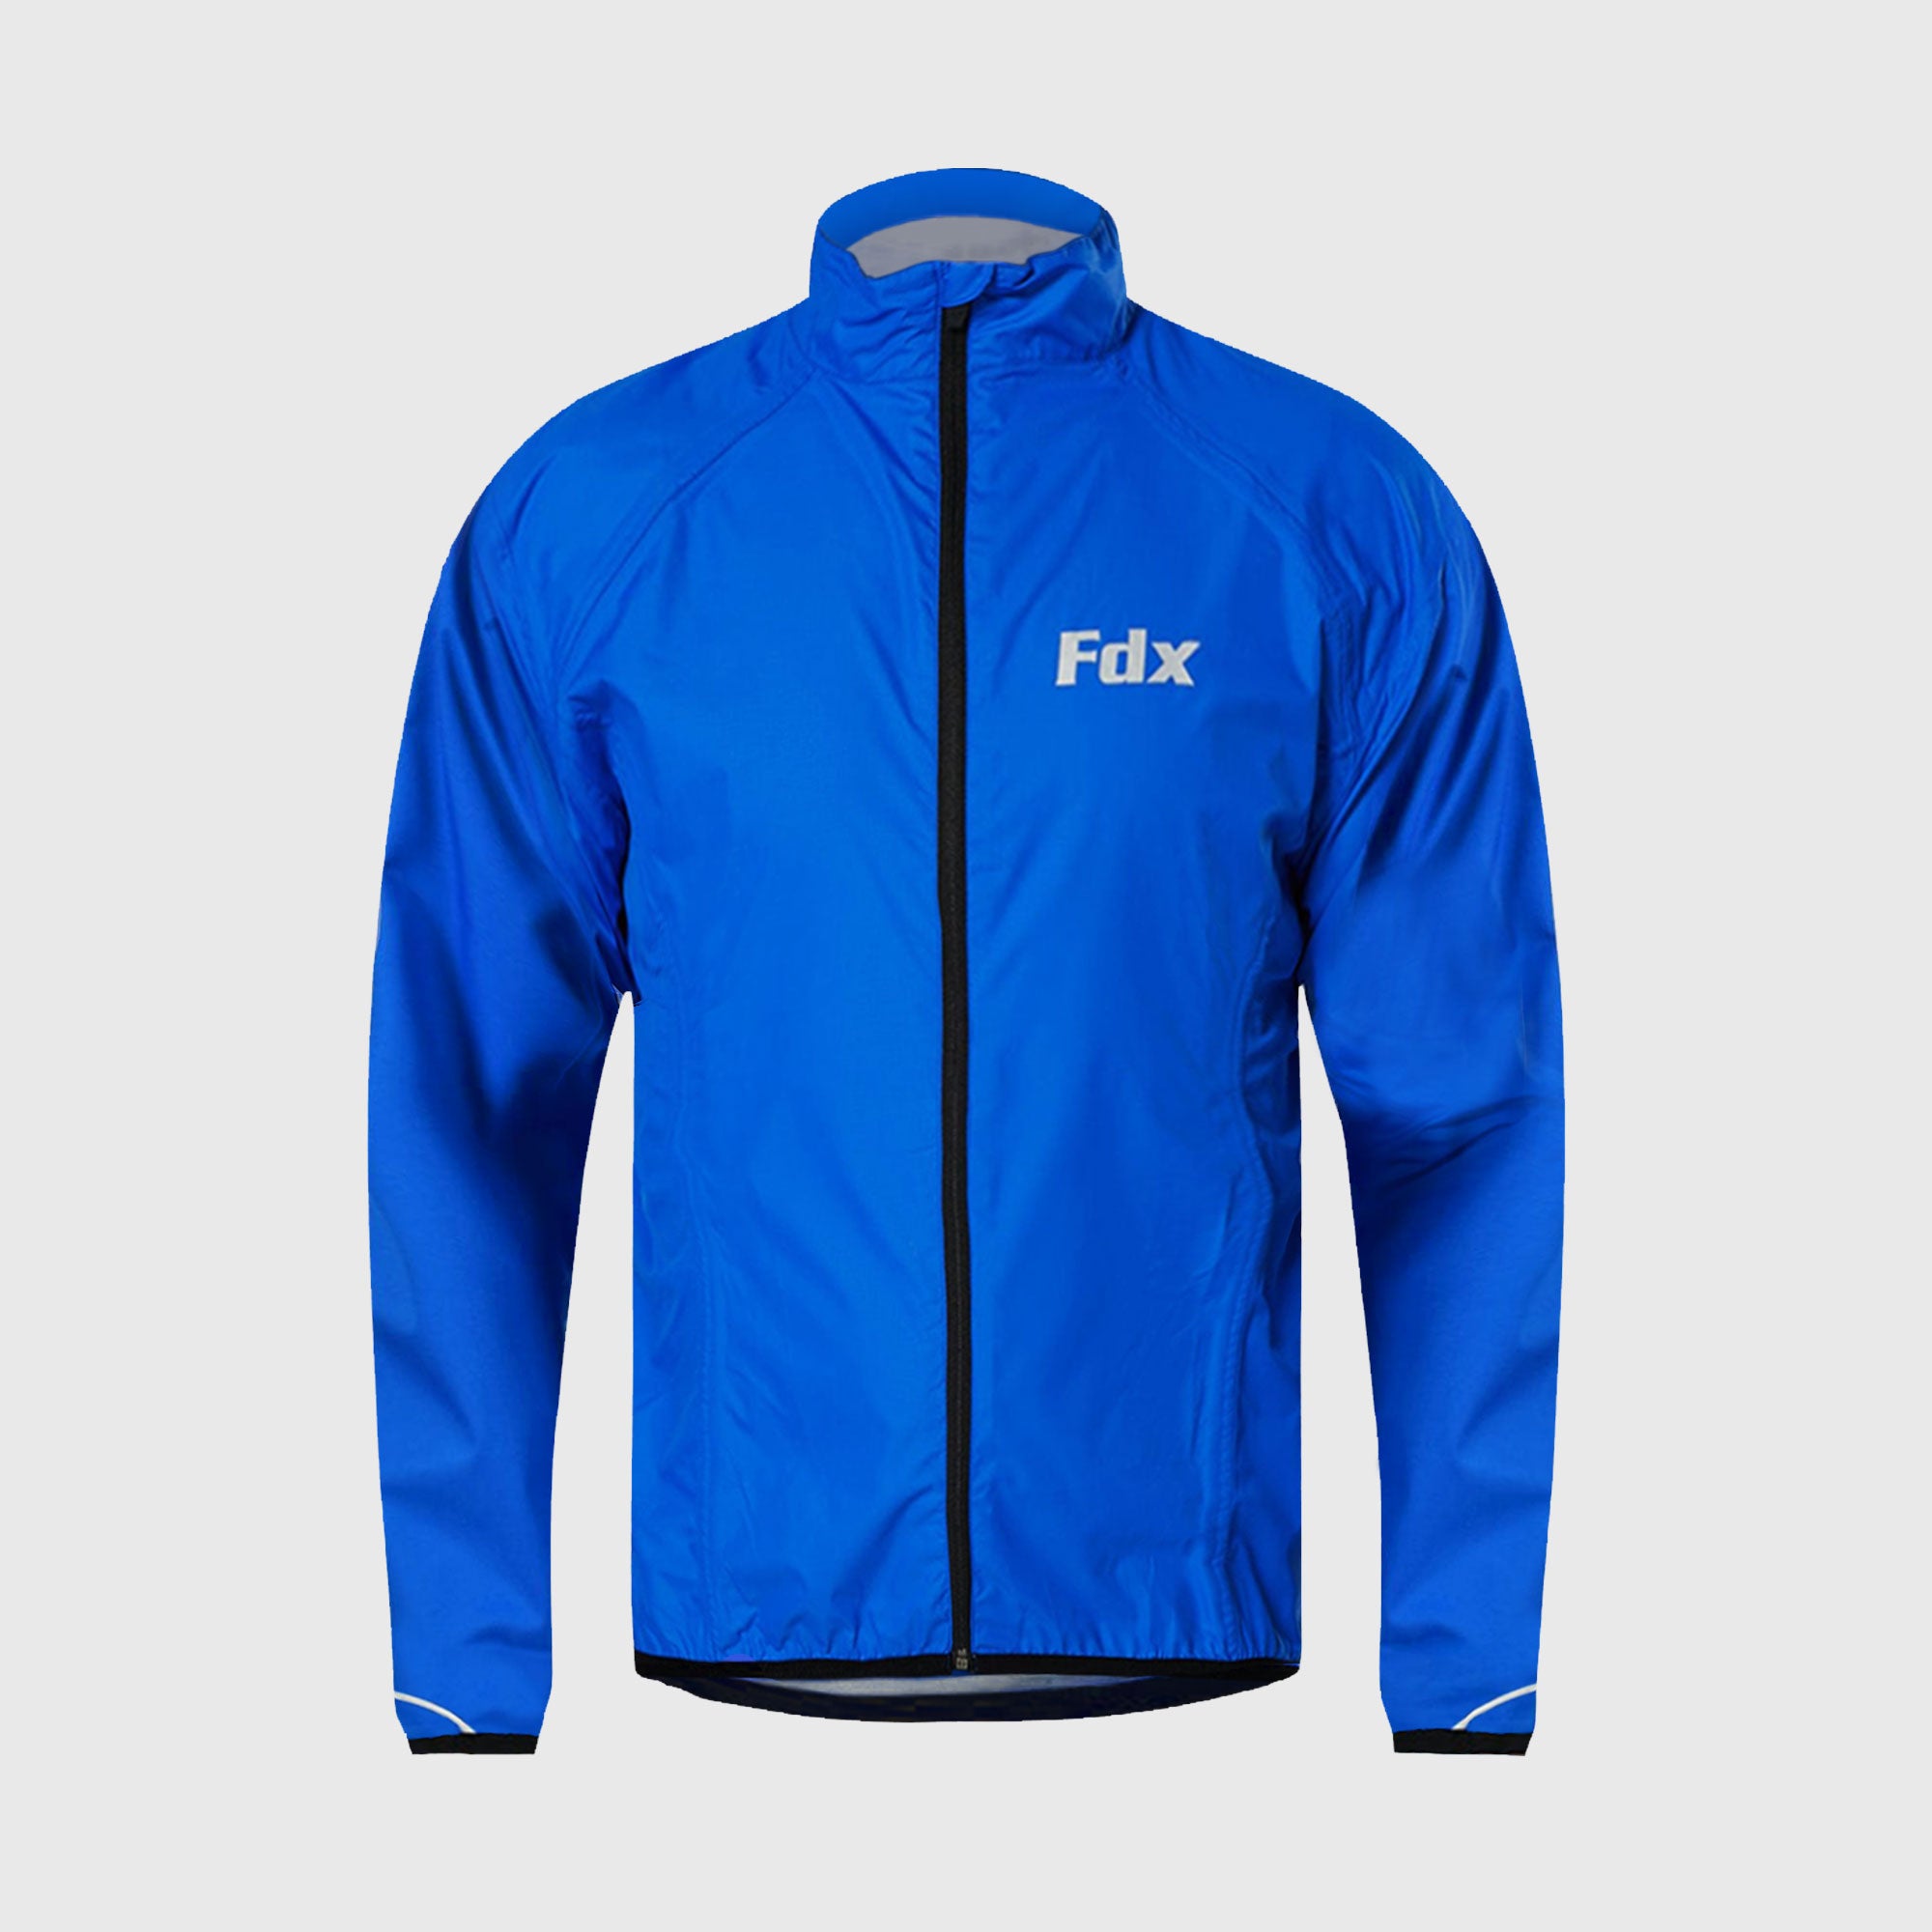 Fdx J20 Blue Women's Windproof & Waterproof Cycling Jacket